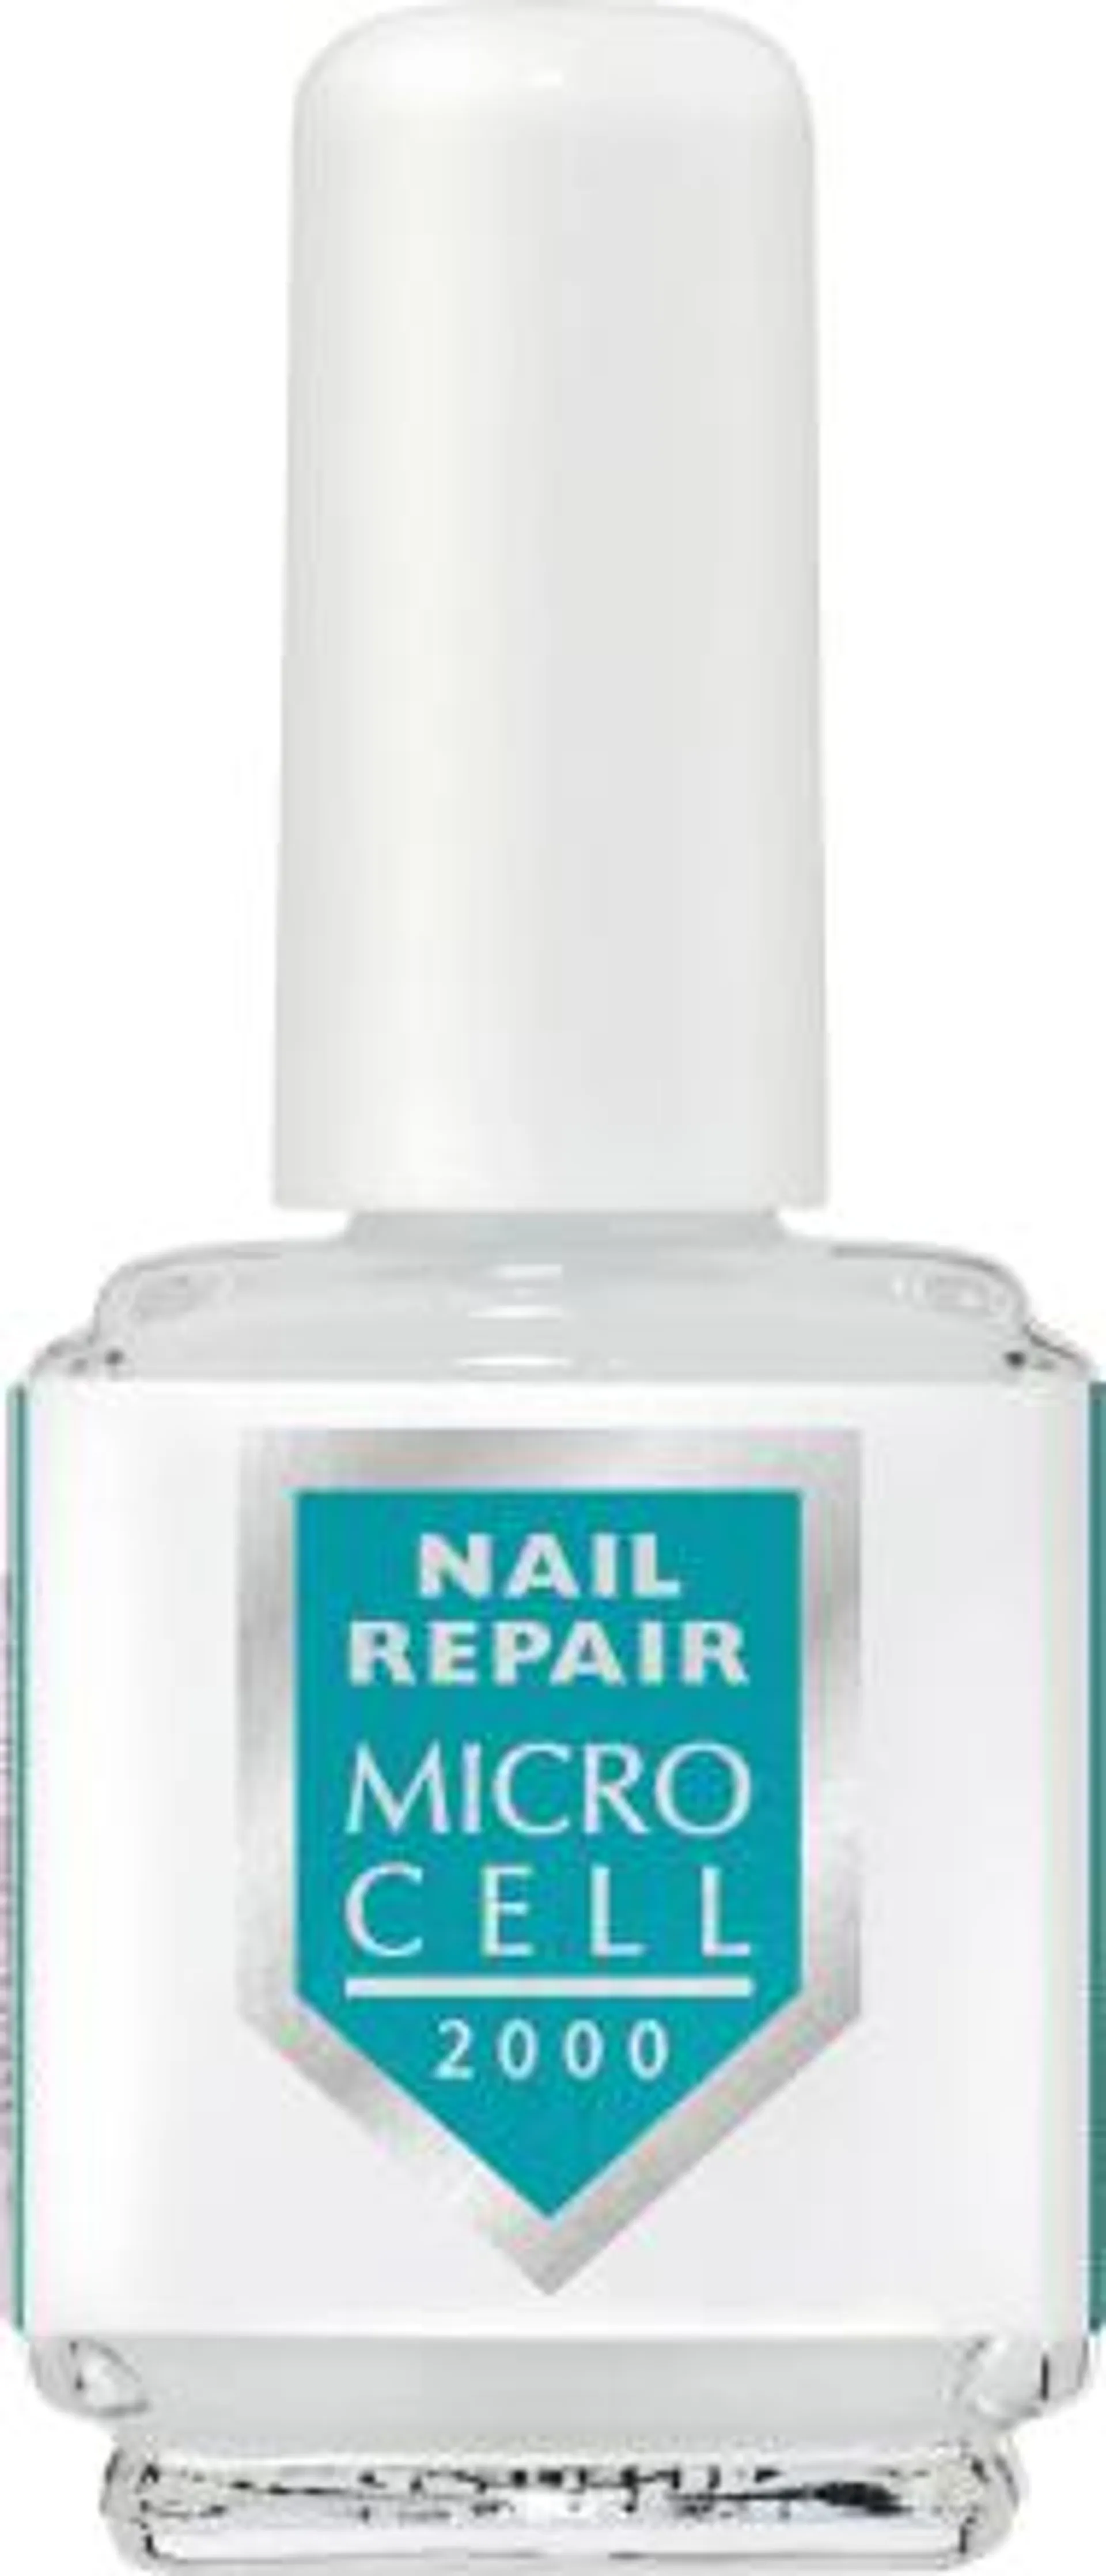 Nagelpflege Nail Repair Micro Cell 2000, 10 ml